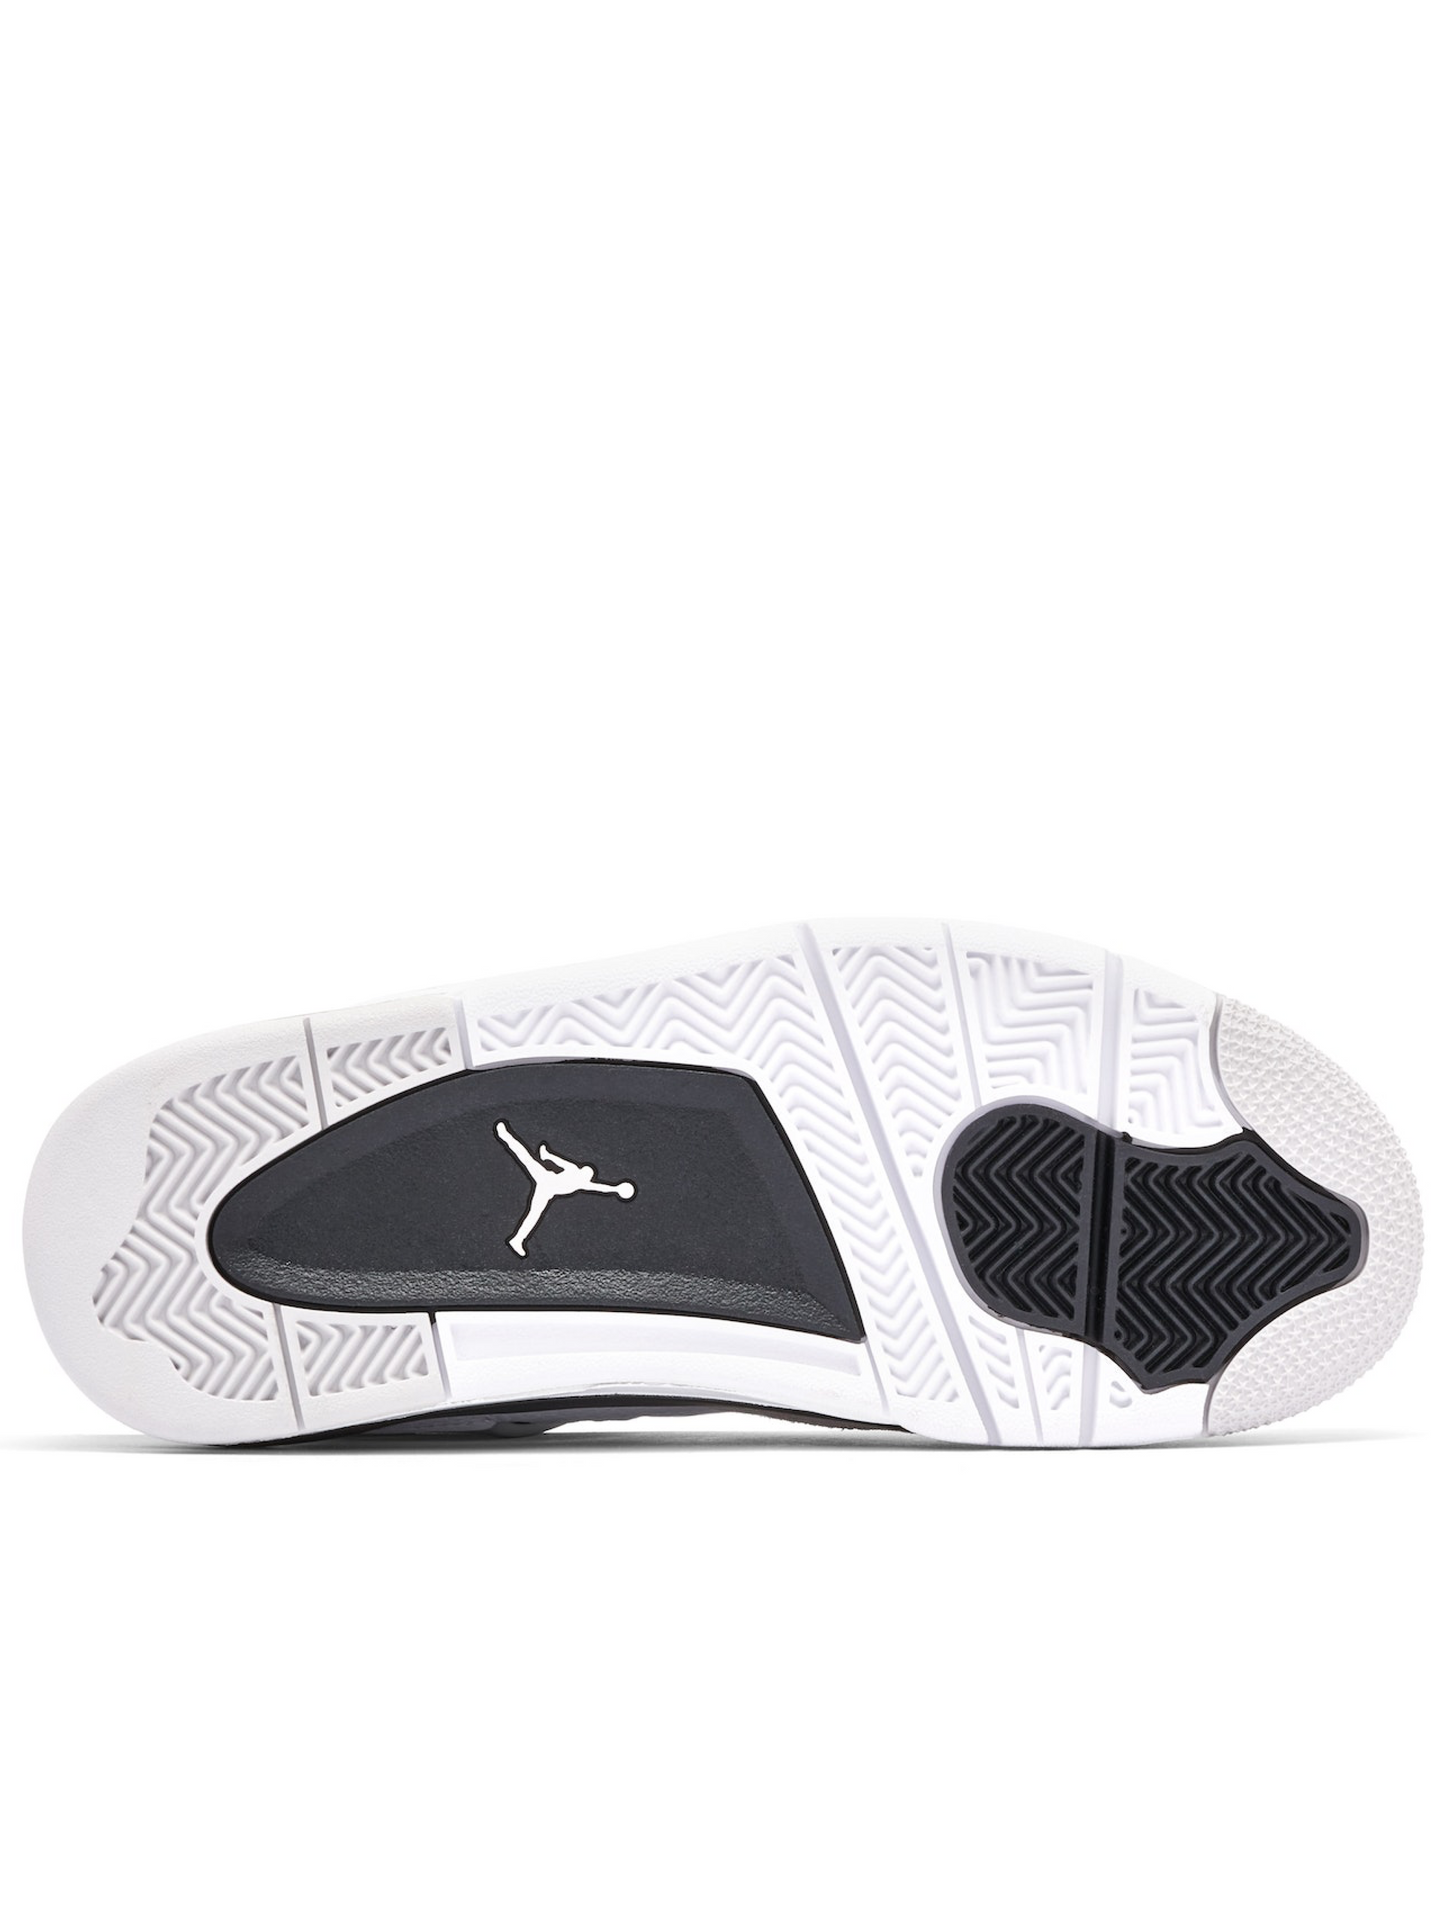 Air Jordan 4 White / Black GS 408452-111